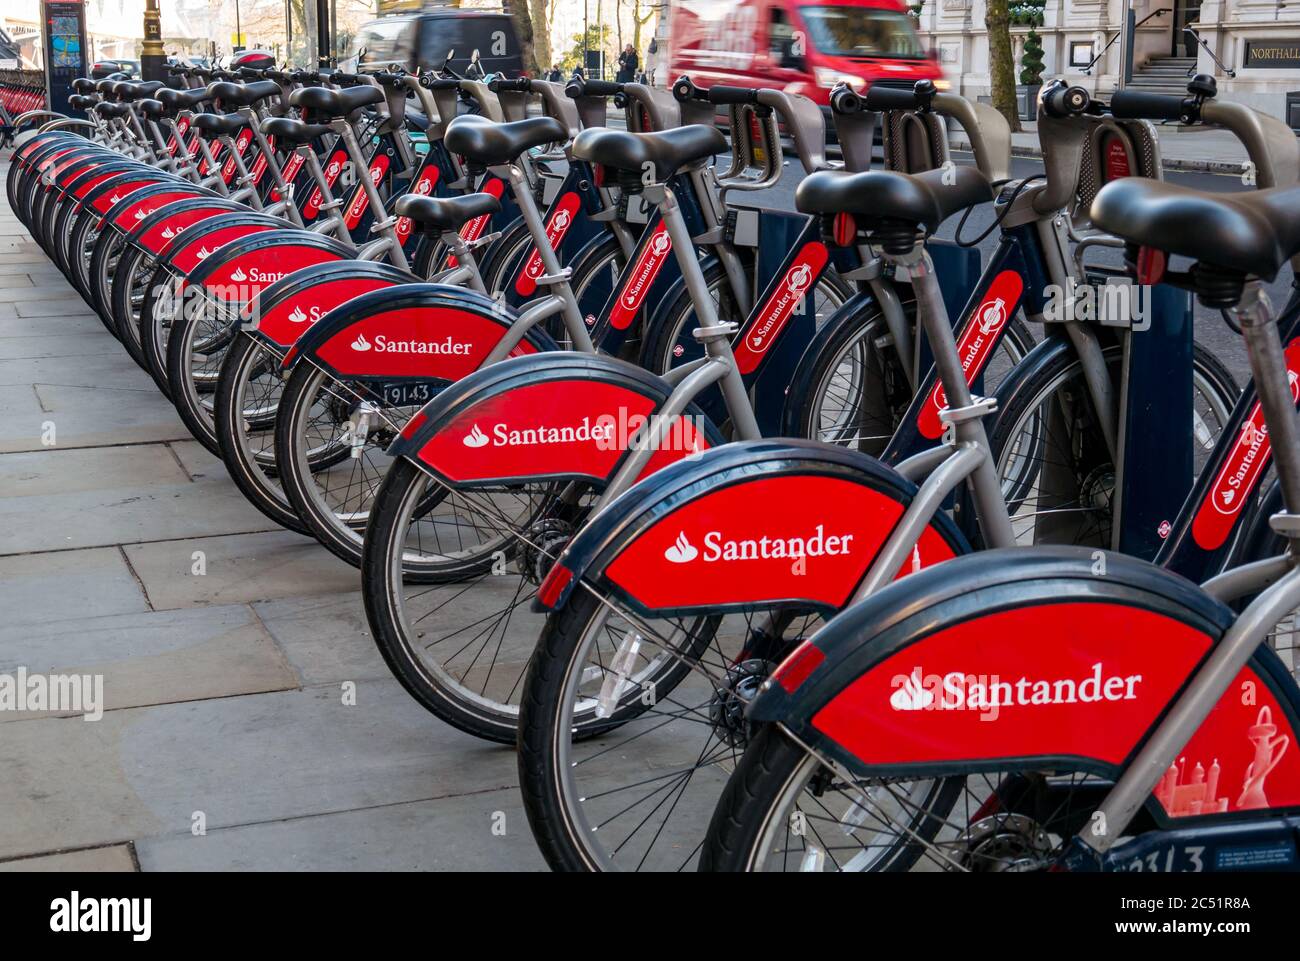 Santander location de vélos dans un stand de vélo, Londres, Angleterre, Royaume-Uni Banque D'Images